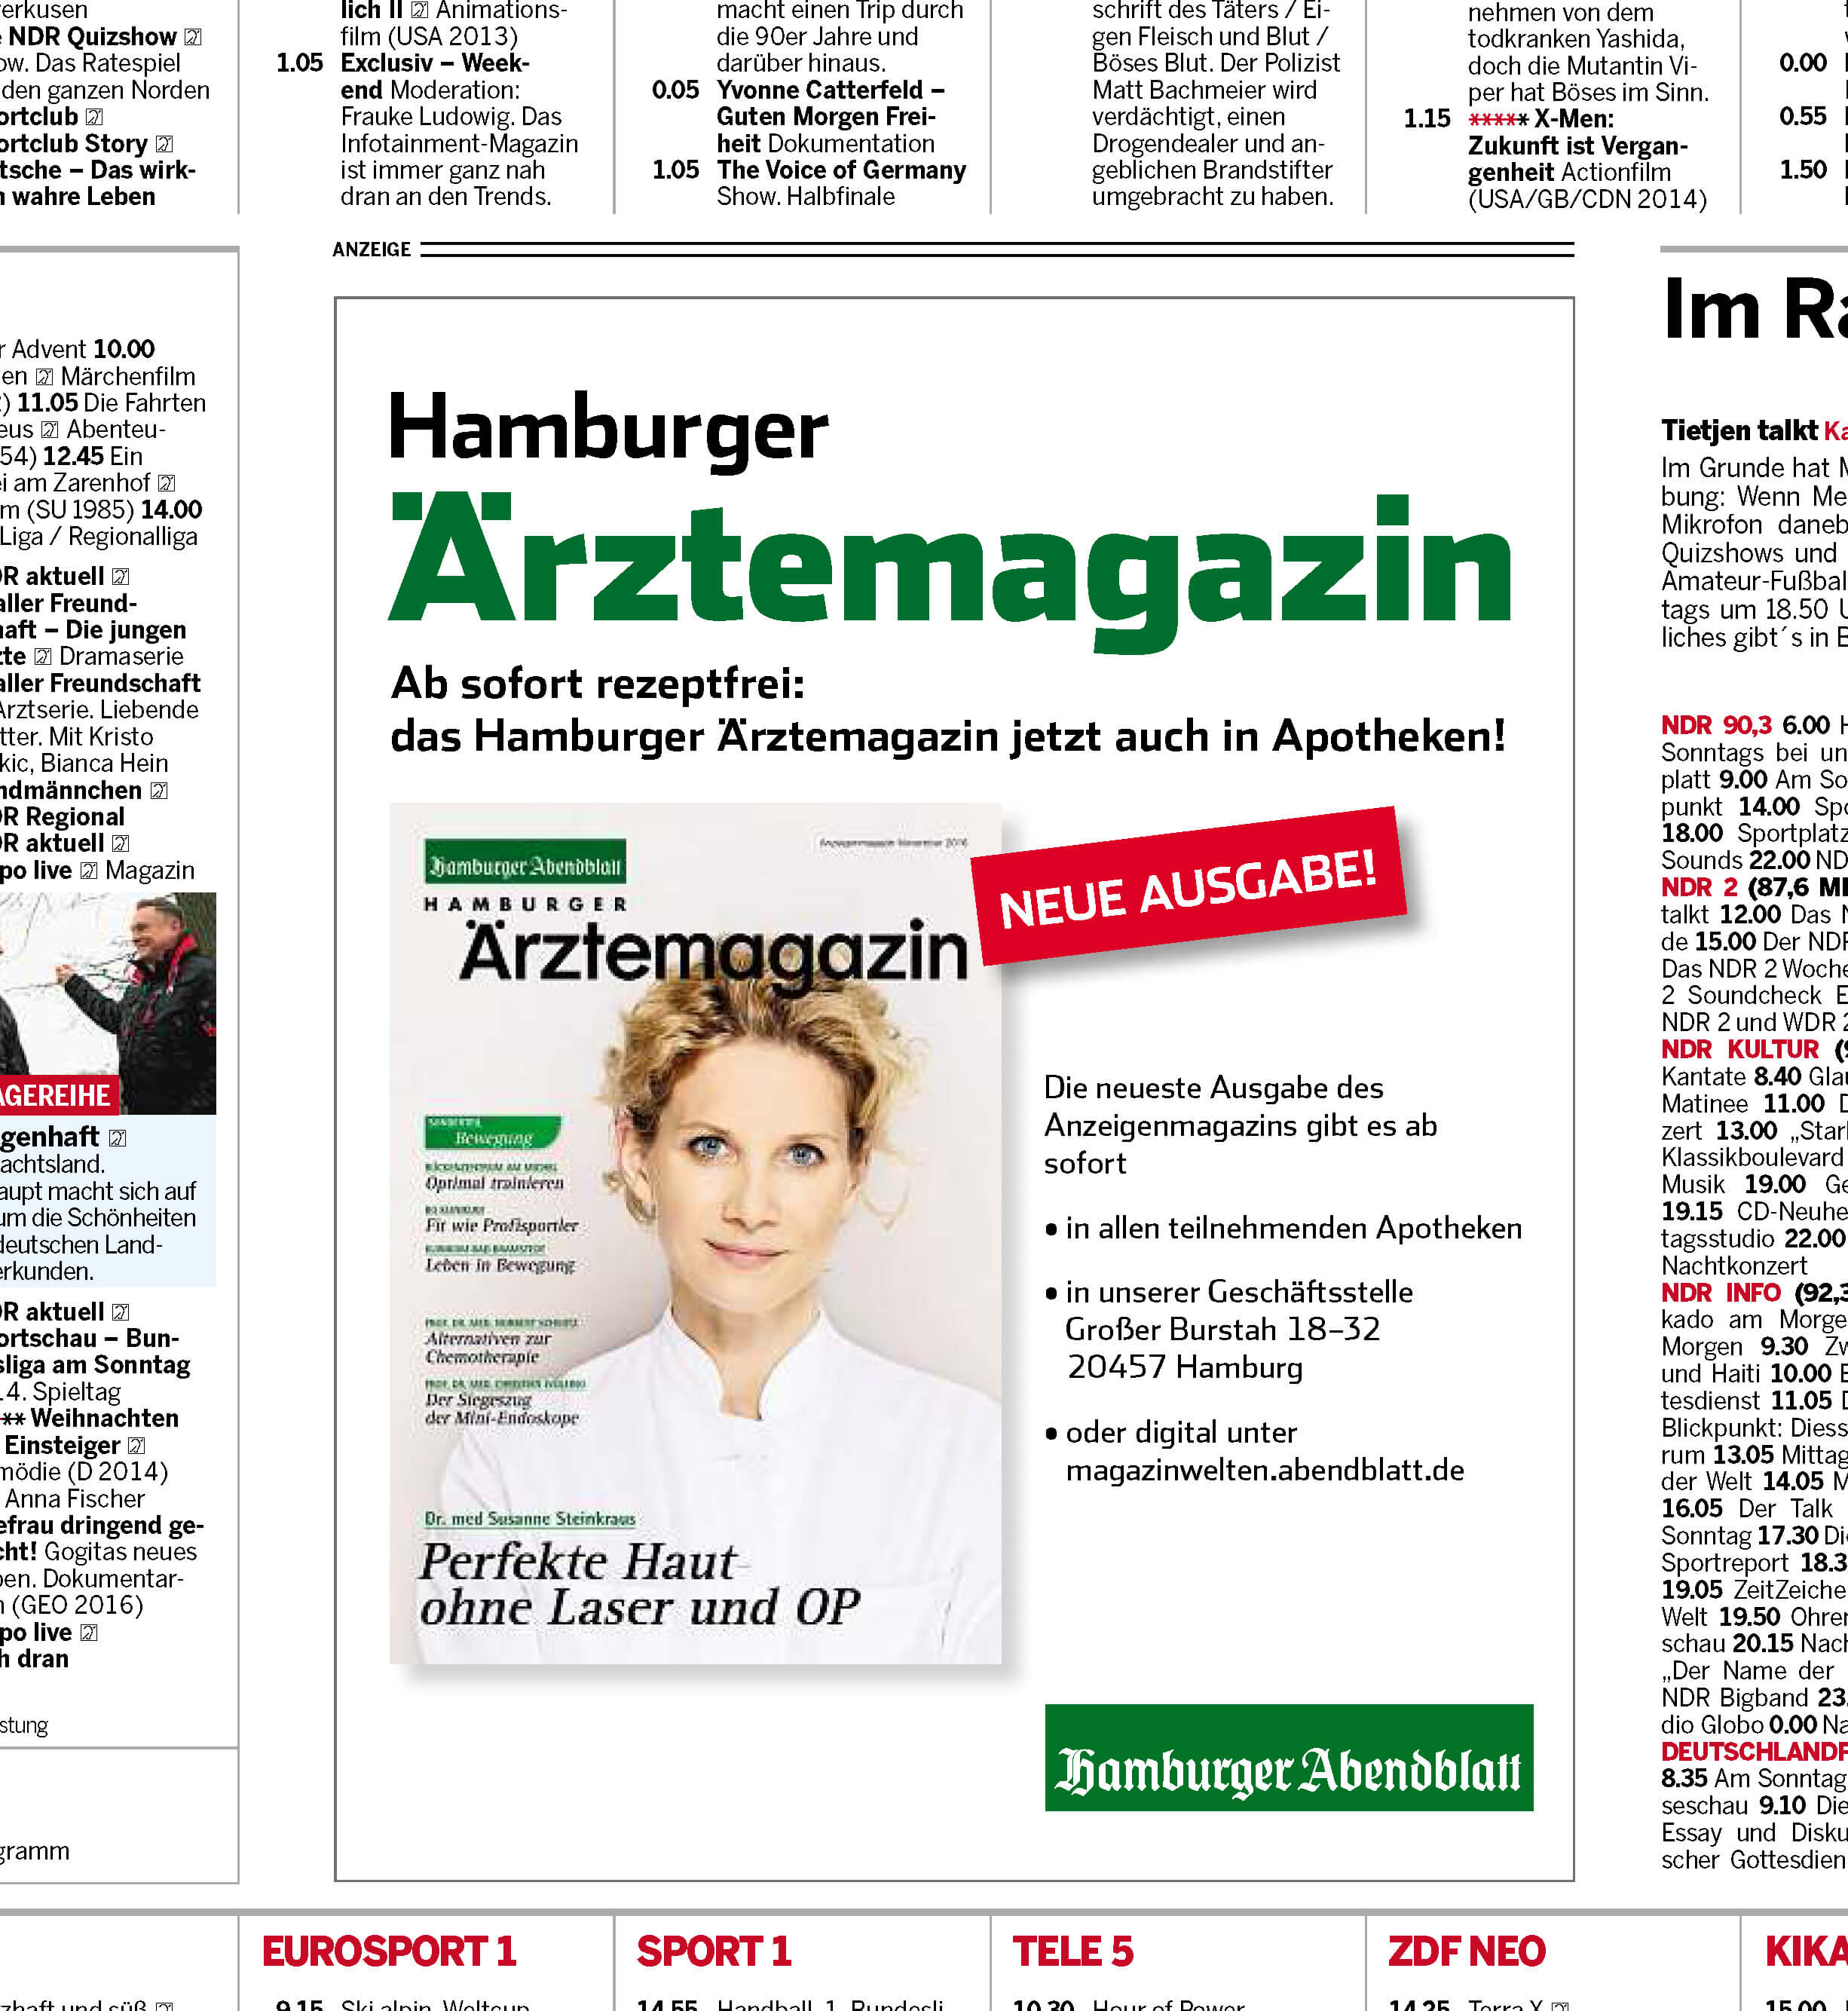 Anzeige zum Hamburger Ärztemagazin im Abendblatt